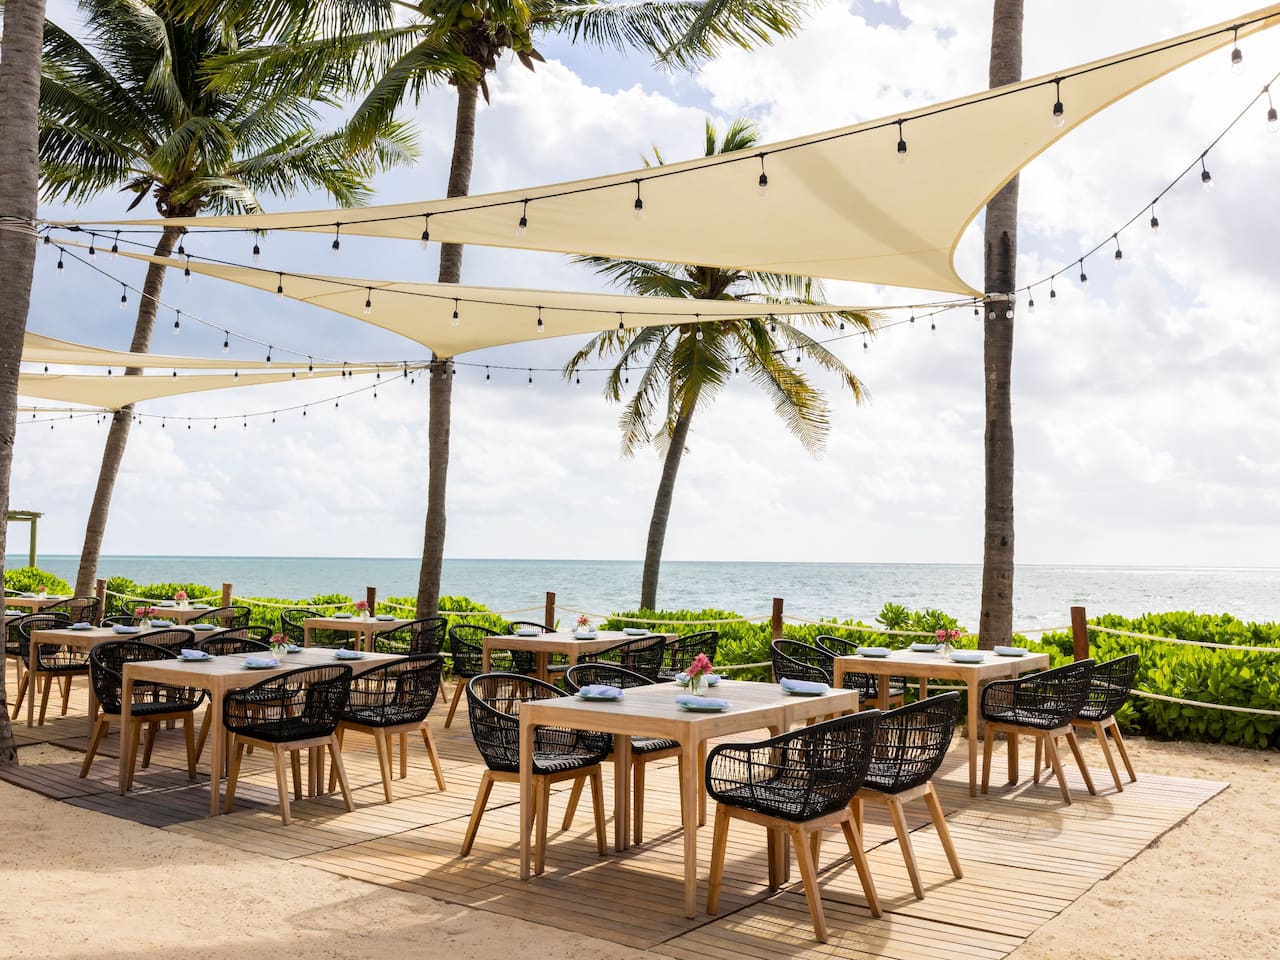 Lola Beach Club Outdoor Dining Club